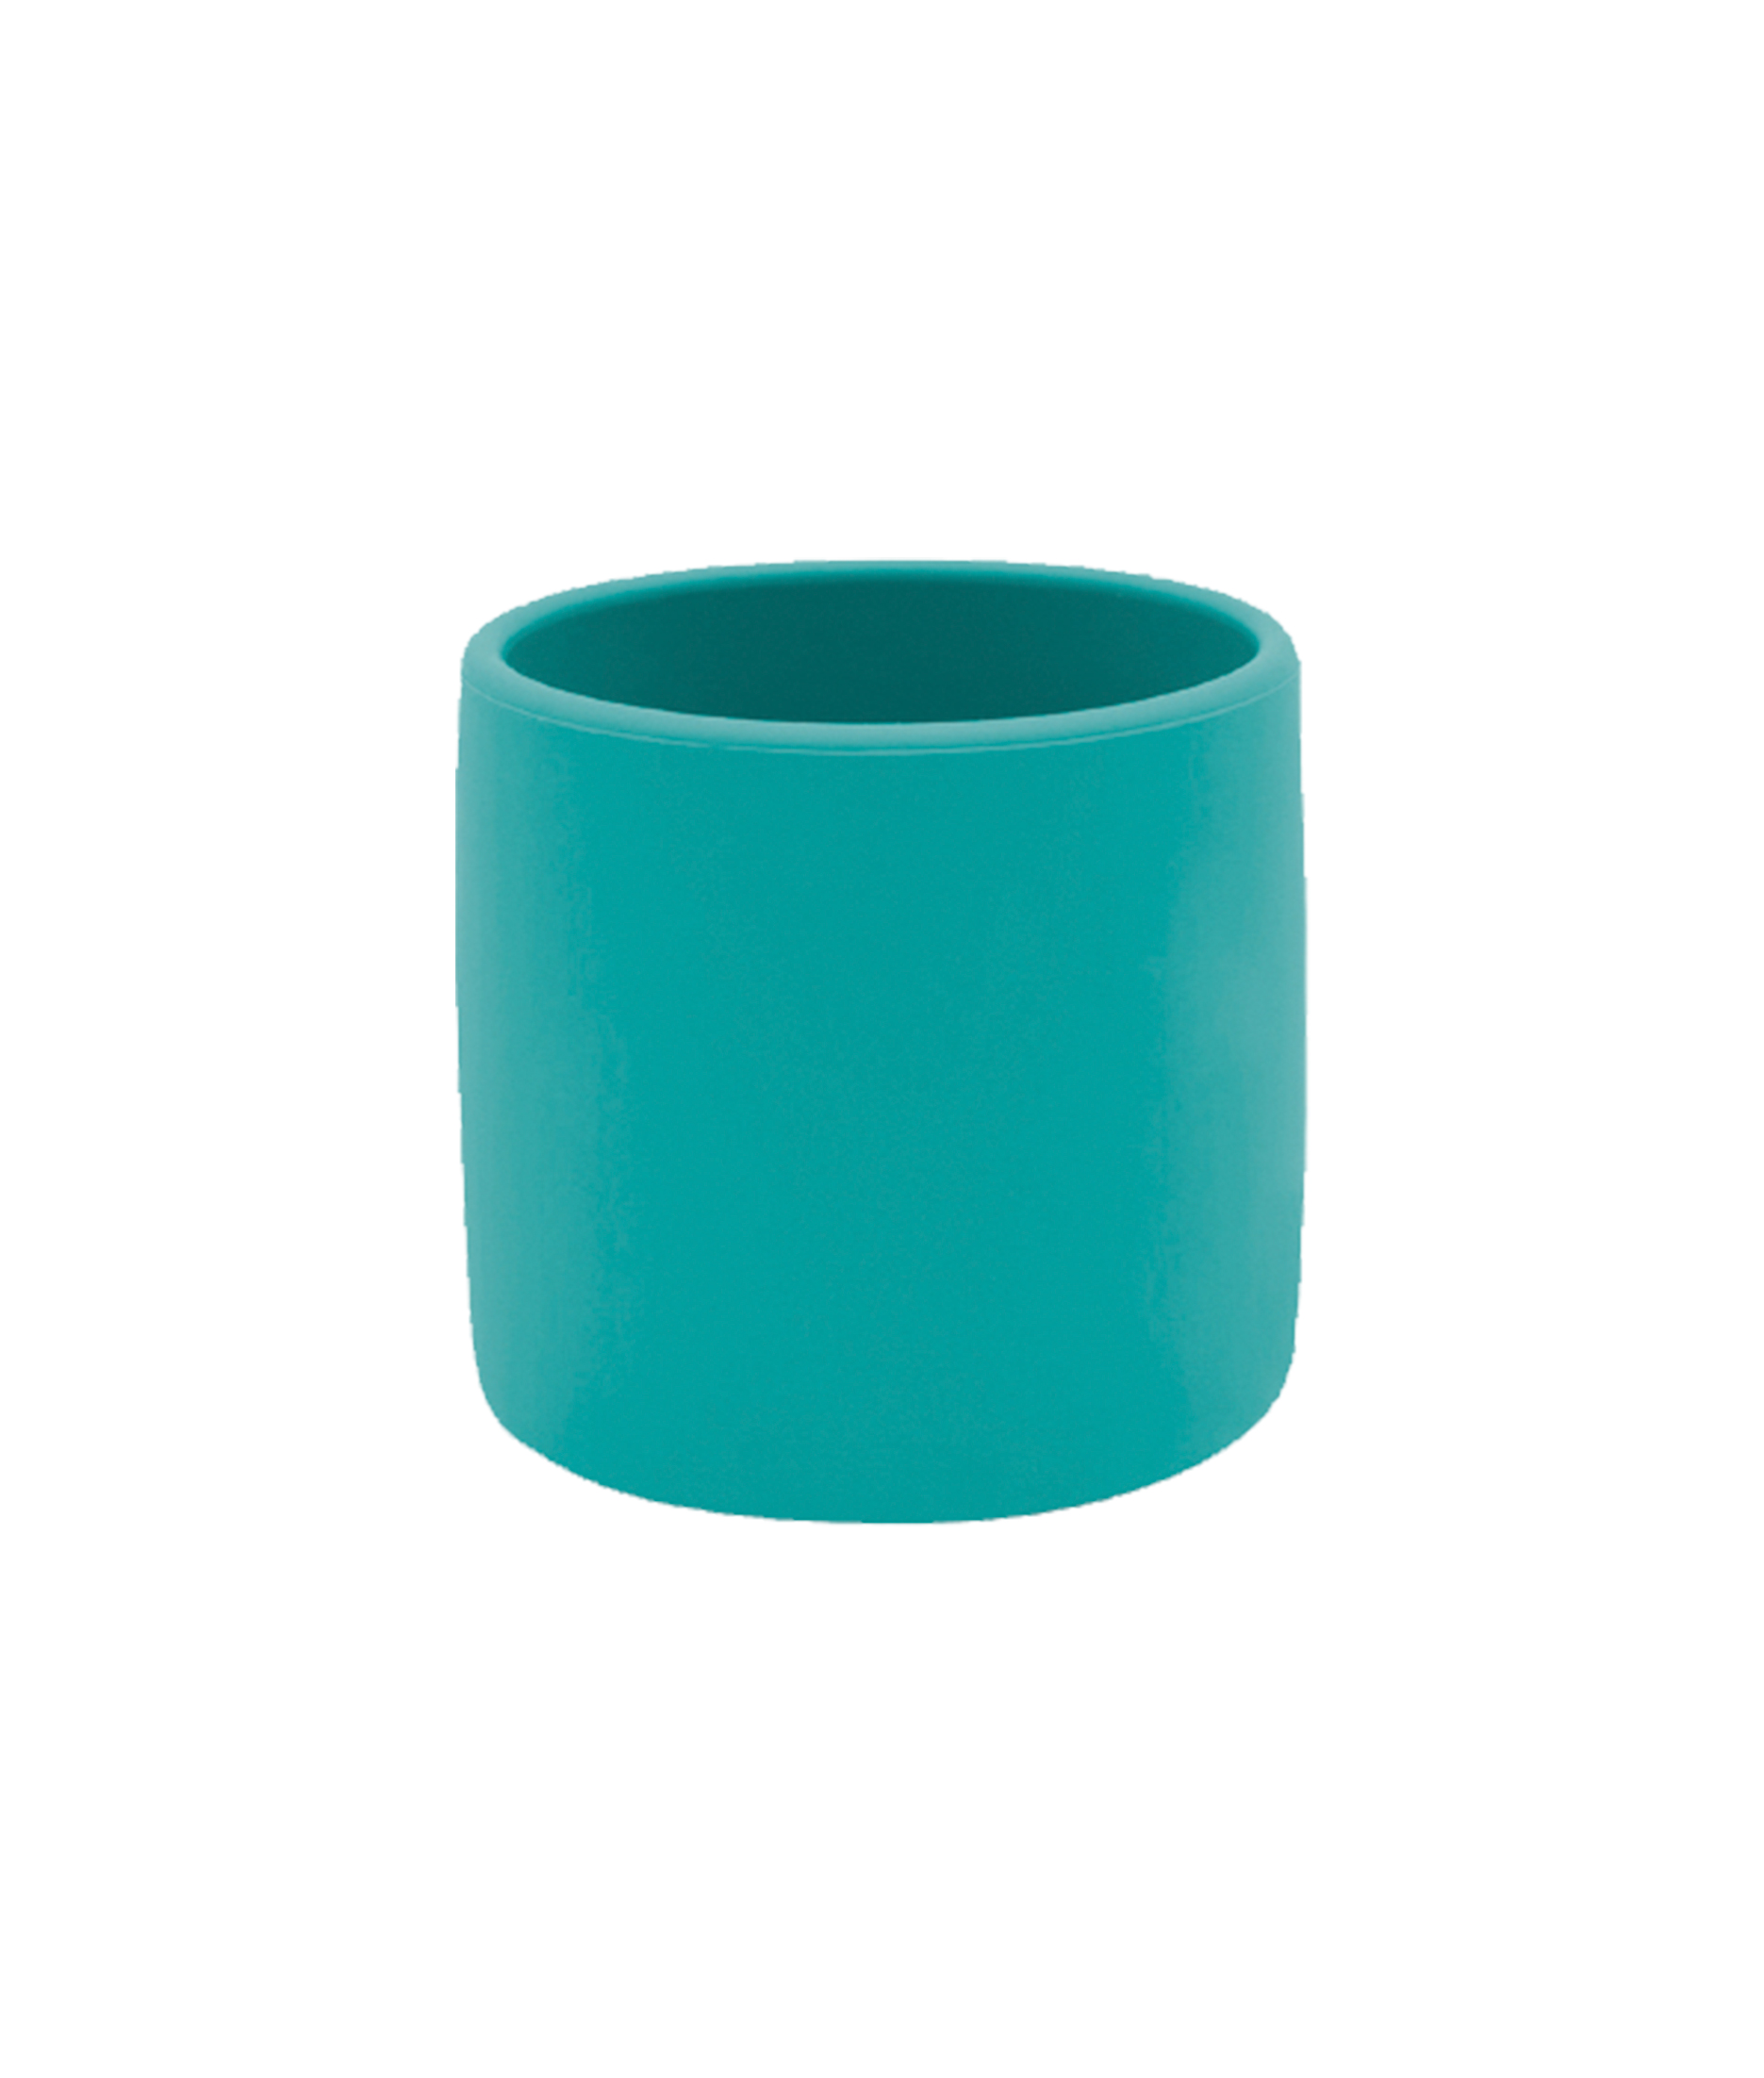 01-Mini-Cup-Green